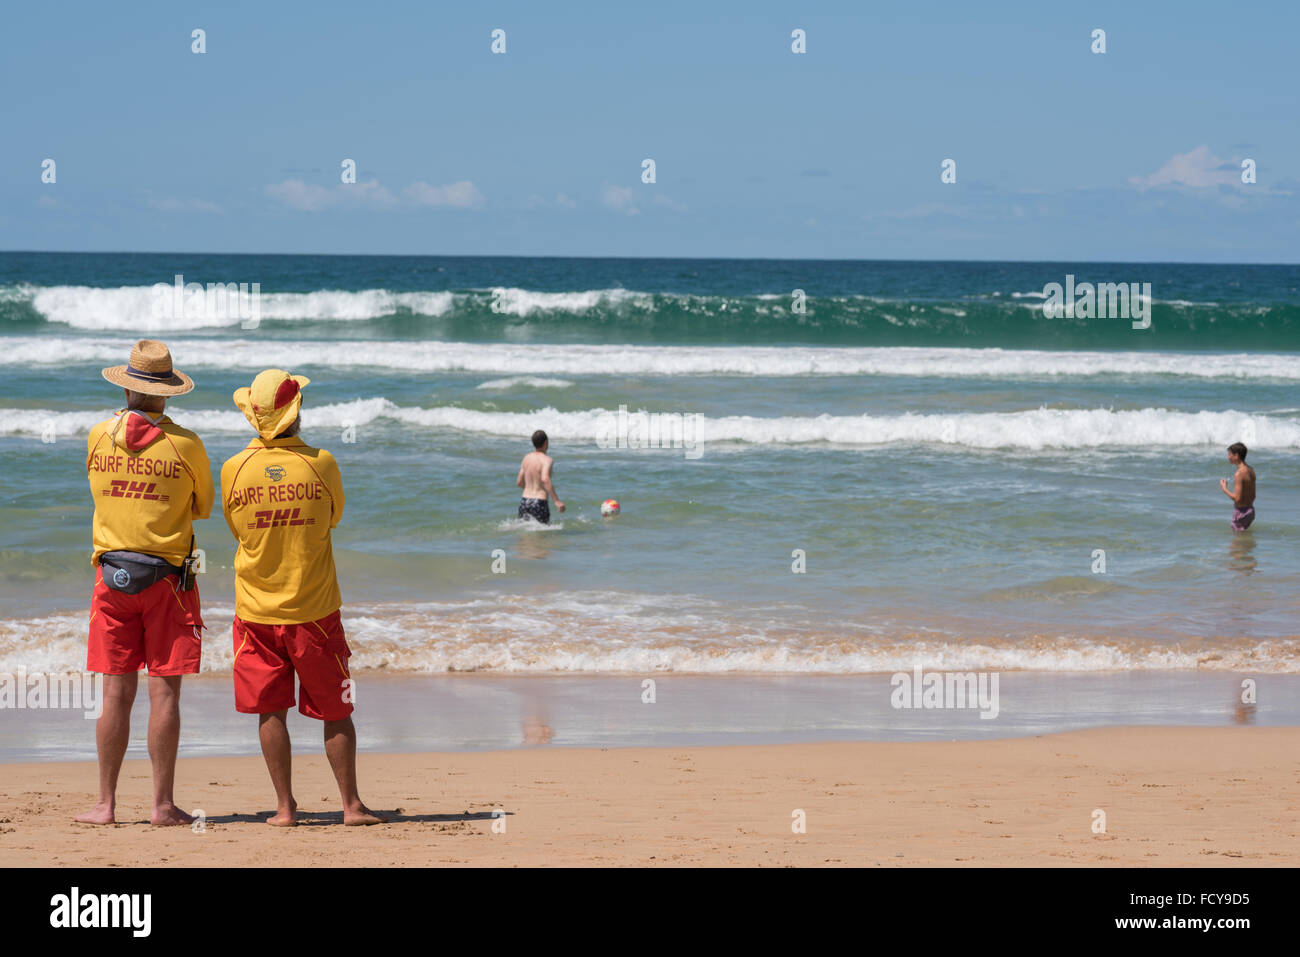 Rettungsschwimmer am Manly Beach, Australien. Trotz den Warnzeichen für starke Brandung spielen zwei Männer in der Brandung am Nationalfeiertag Australia Day sah vorsichtig zwei Rettungsschwimmer Stockfoto